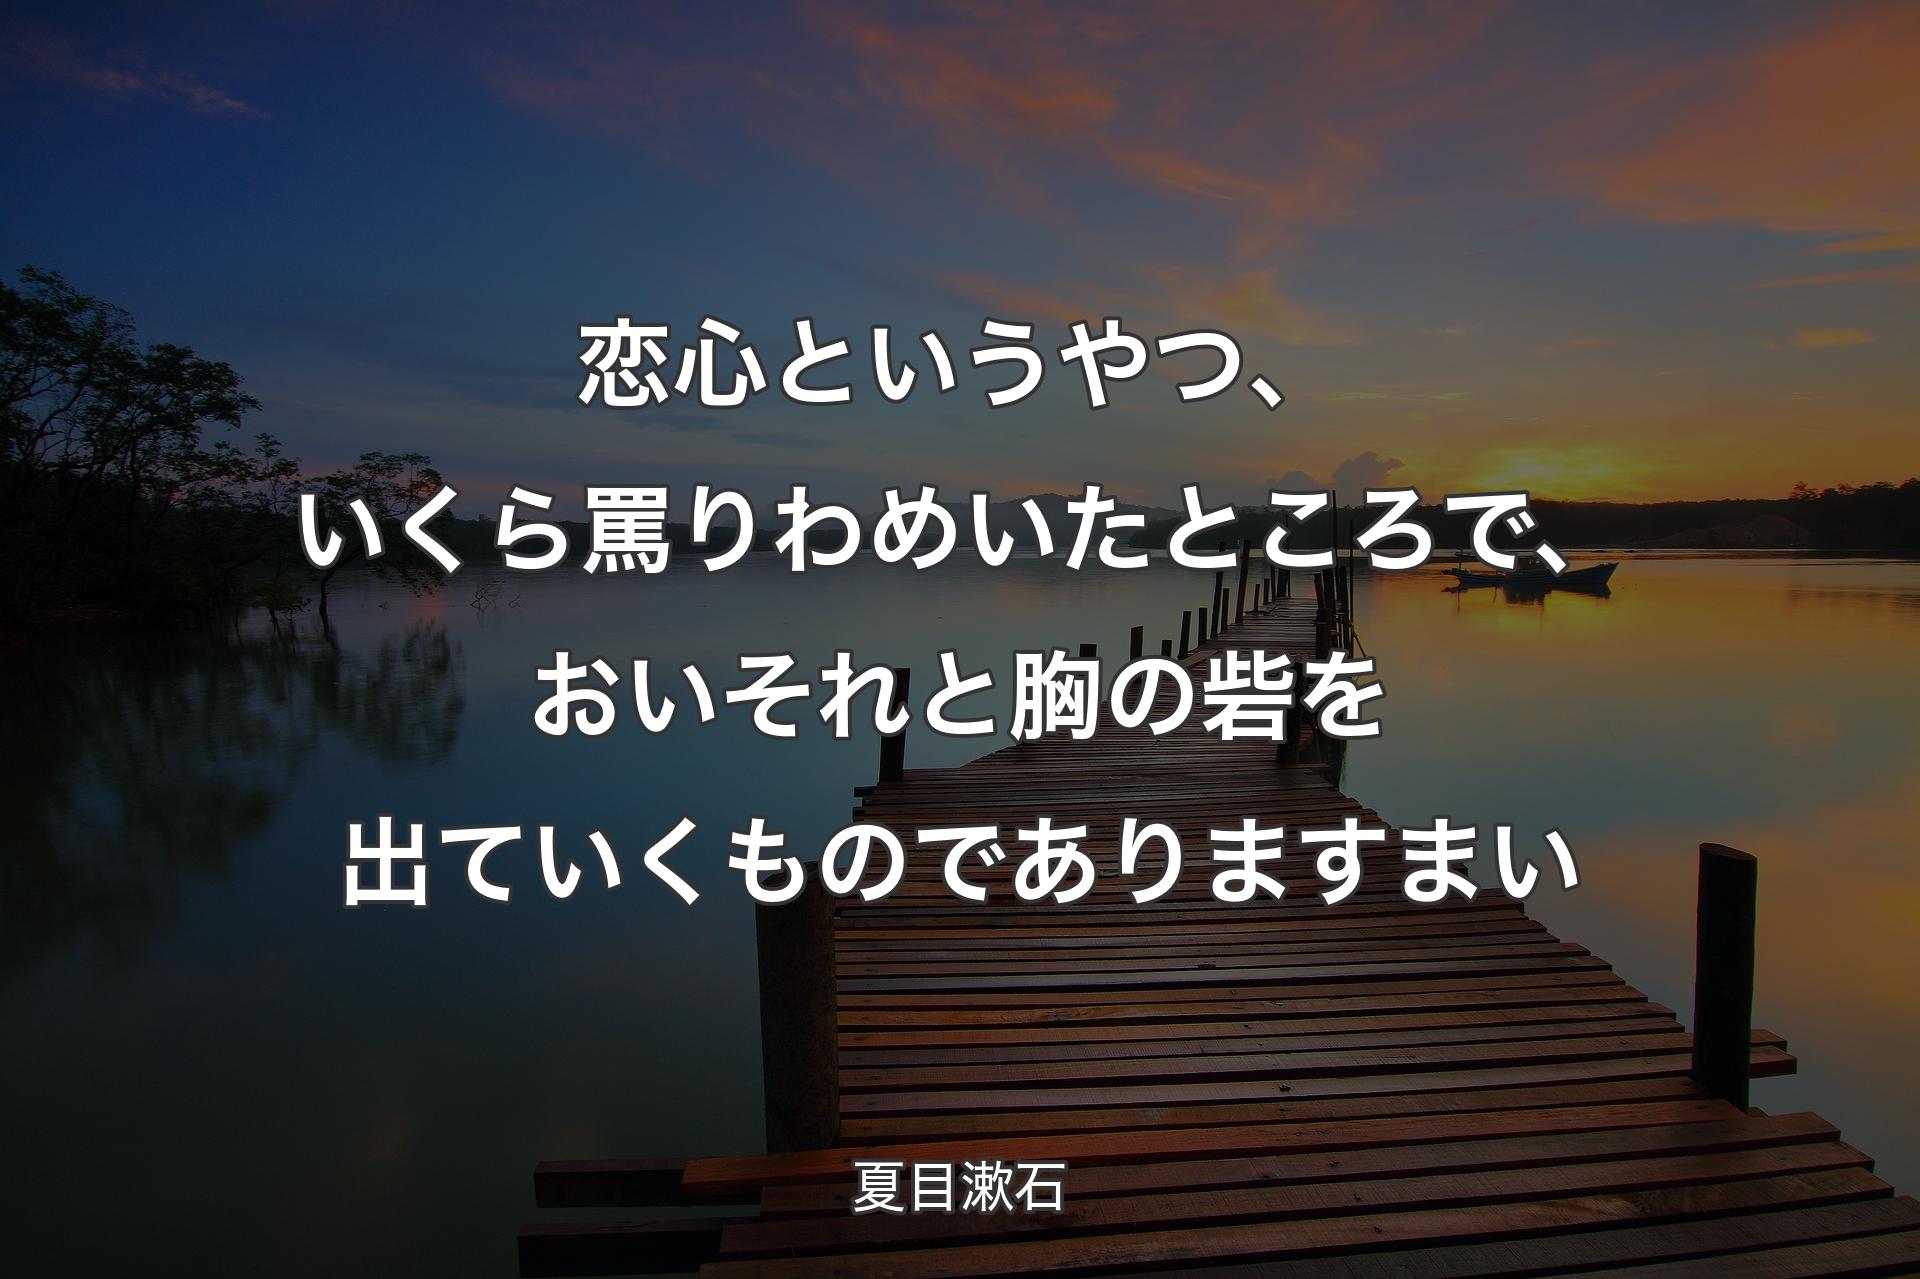 【背景3】恋心というやつ、いくら罵�りわめいたところで、おいそれと胸の砦を出ていくものでありますまい - 夏目漱石